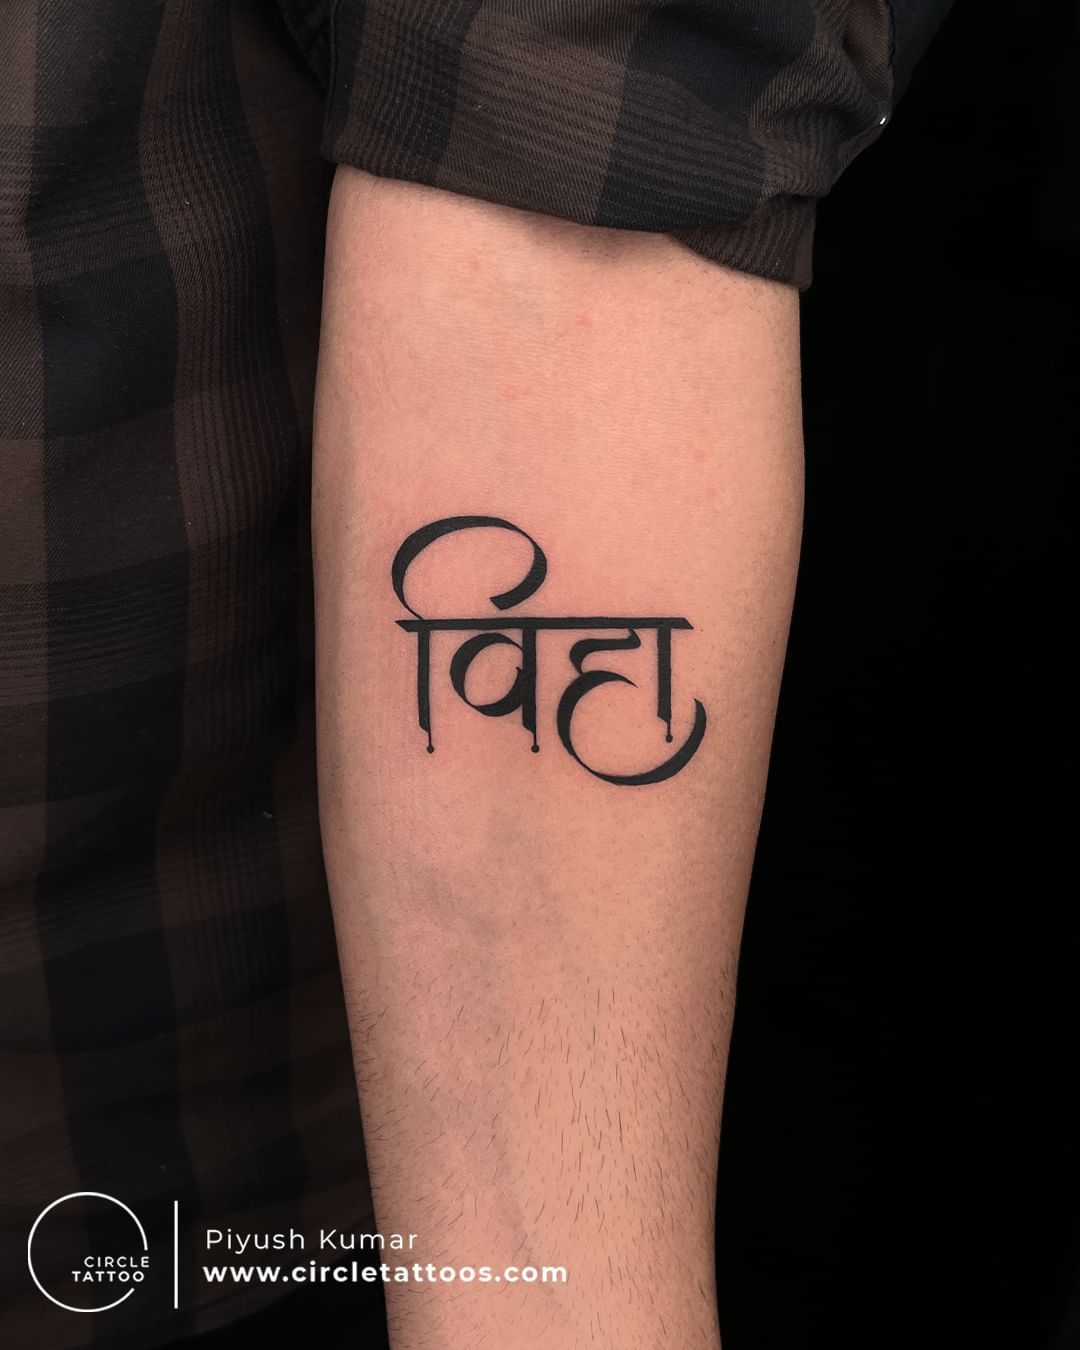 Piyush Kumar - Circle Tattoo | LinkedIn